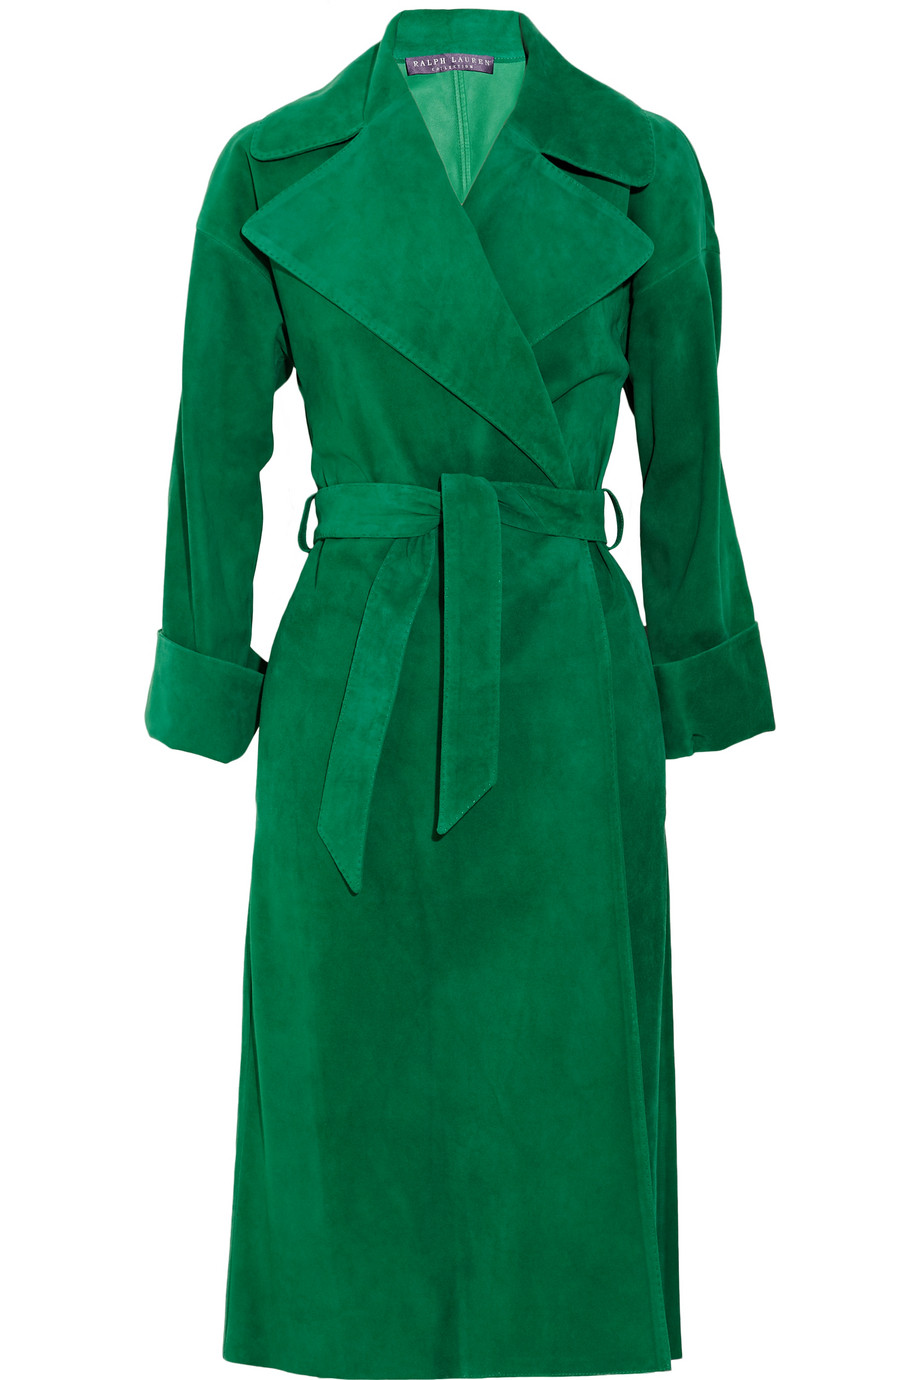 Ralph Lauren Collection Leah Suede Coat in Green | Lyst